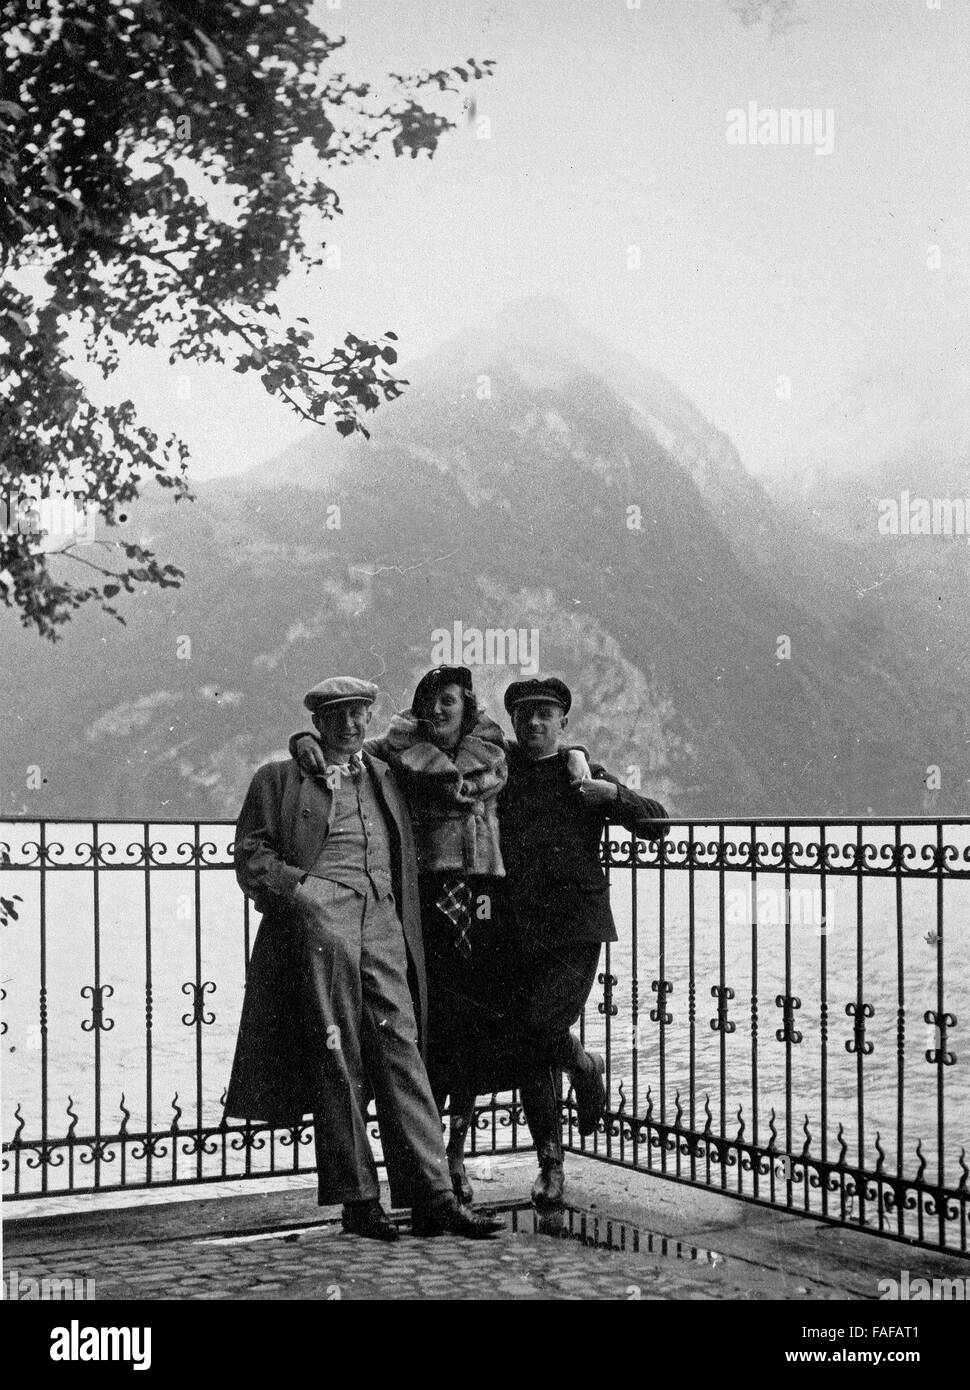 Touristen auf der Tellsplatte am Vierwaldstättersee im Kanton Uri, Schweiz 1930er Jahre. I turisti a raccontare la piattaforma sul Lago di Lucerna nel canton Uri, Svizzera 1930s. Foto Stock